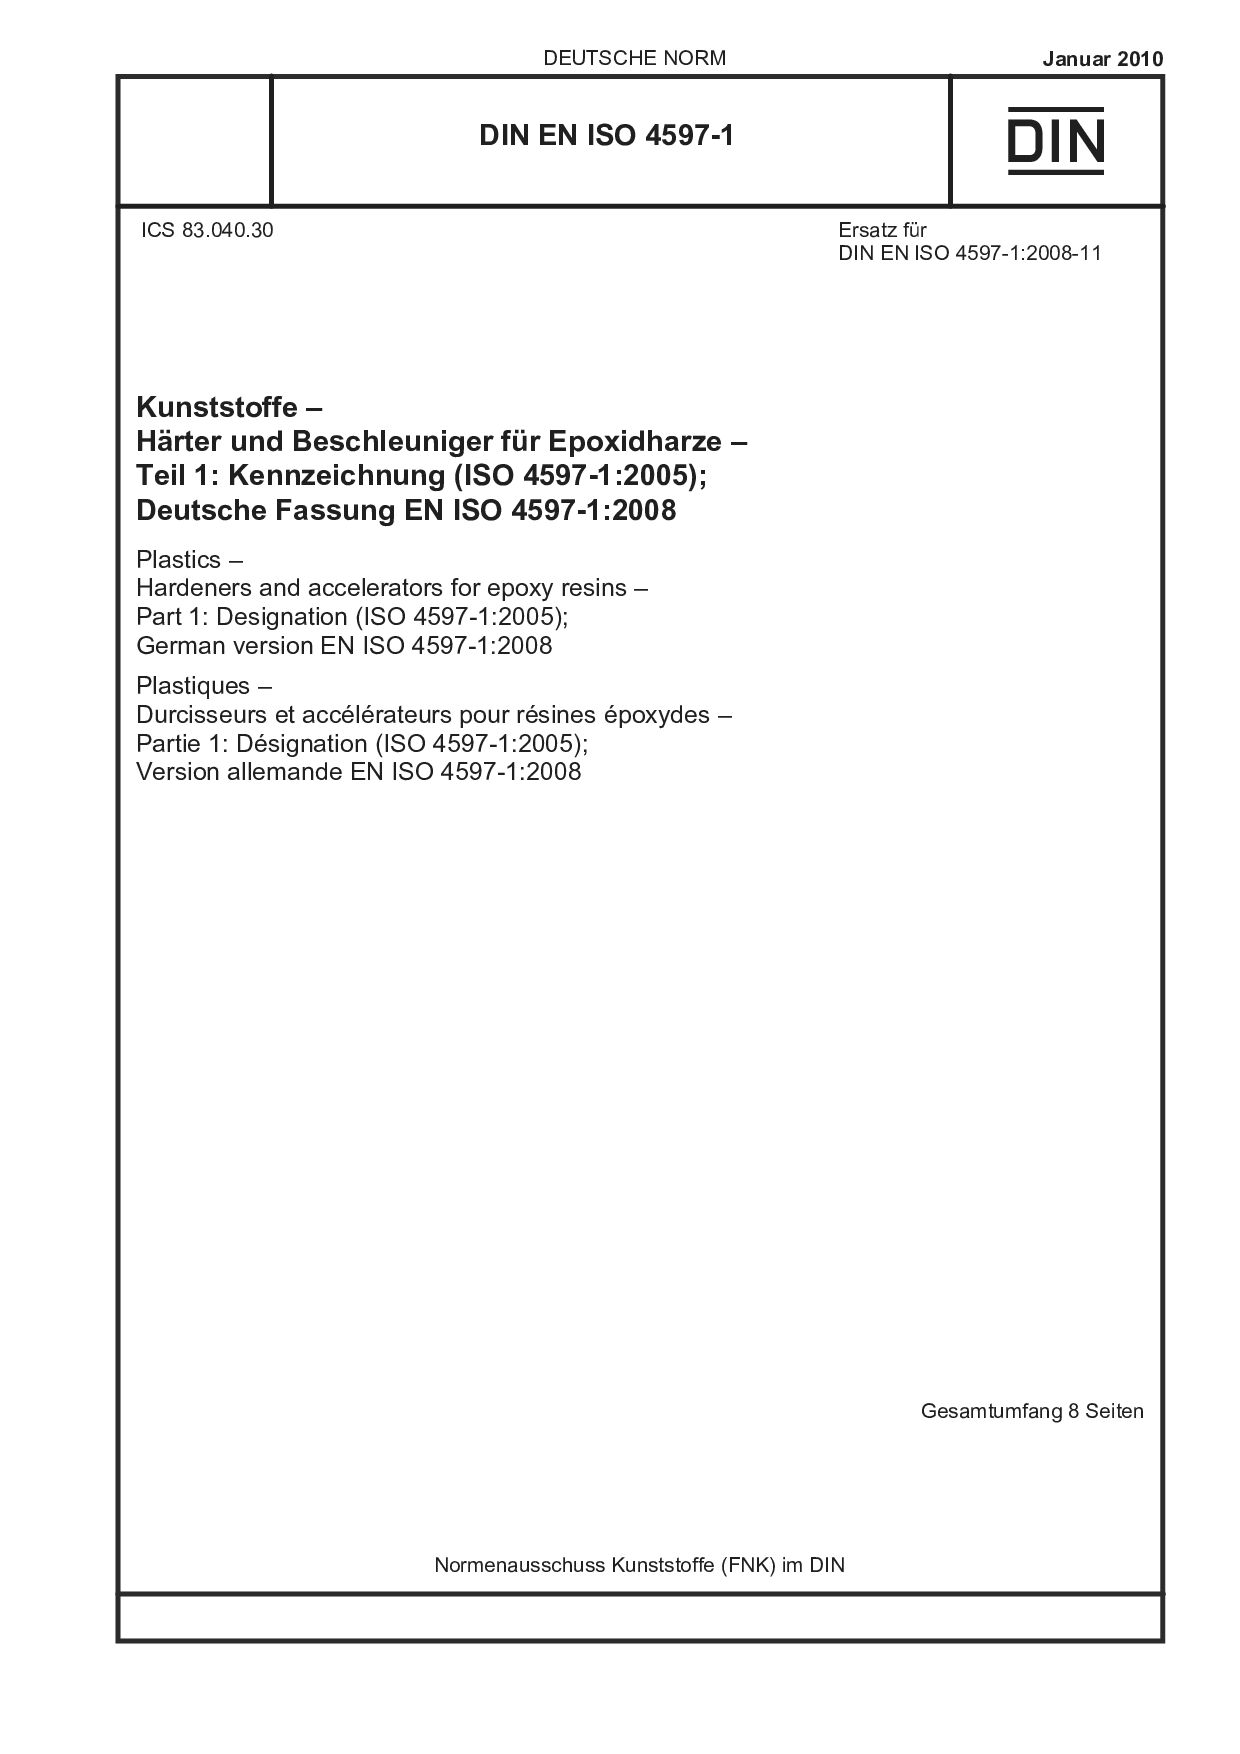 DIN EN ISO 4597-1:2010封面图